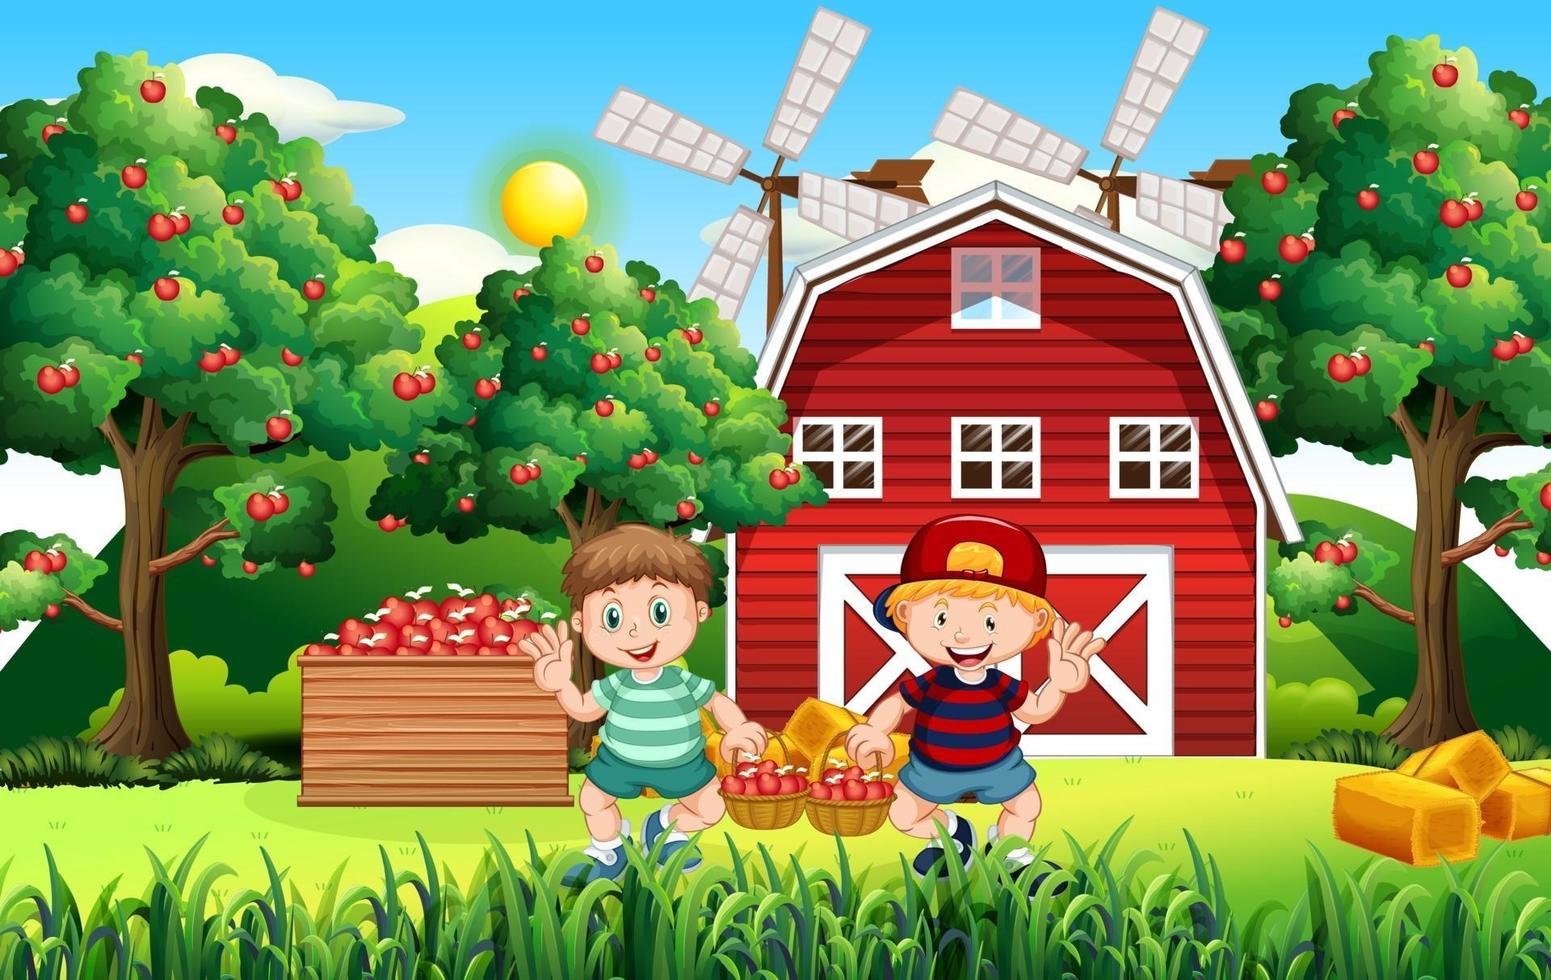 scène de ferme avec un fermier récolte des pommes vecteur